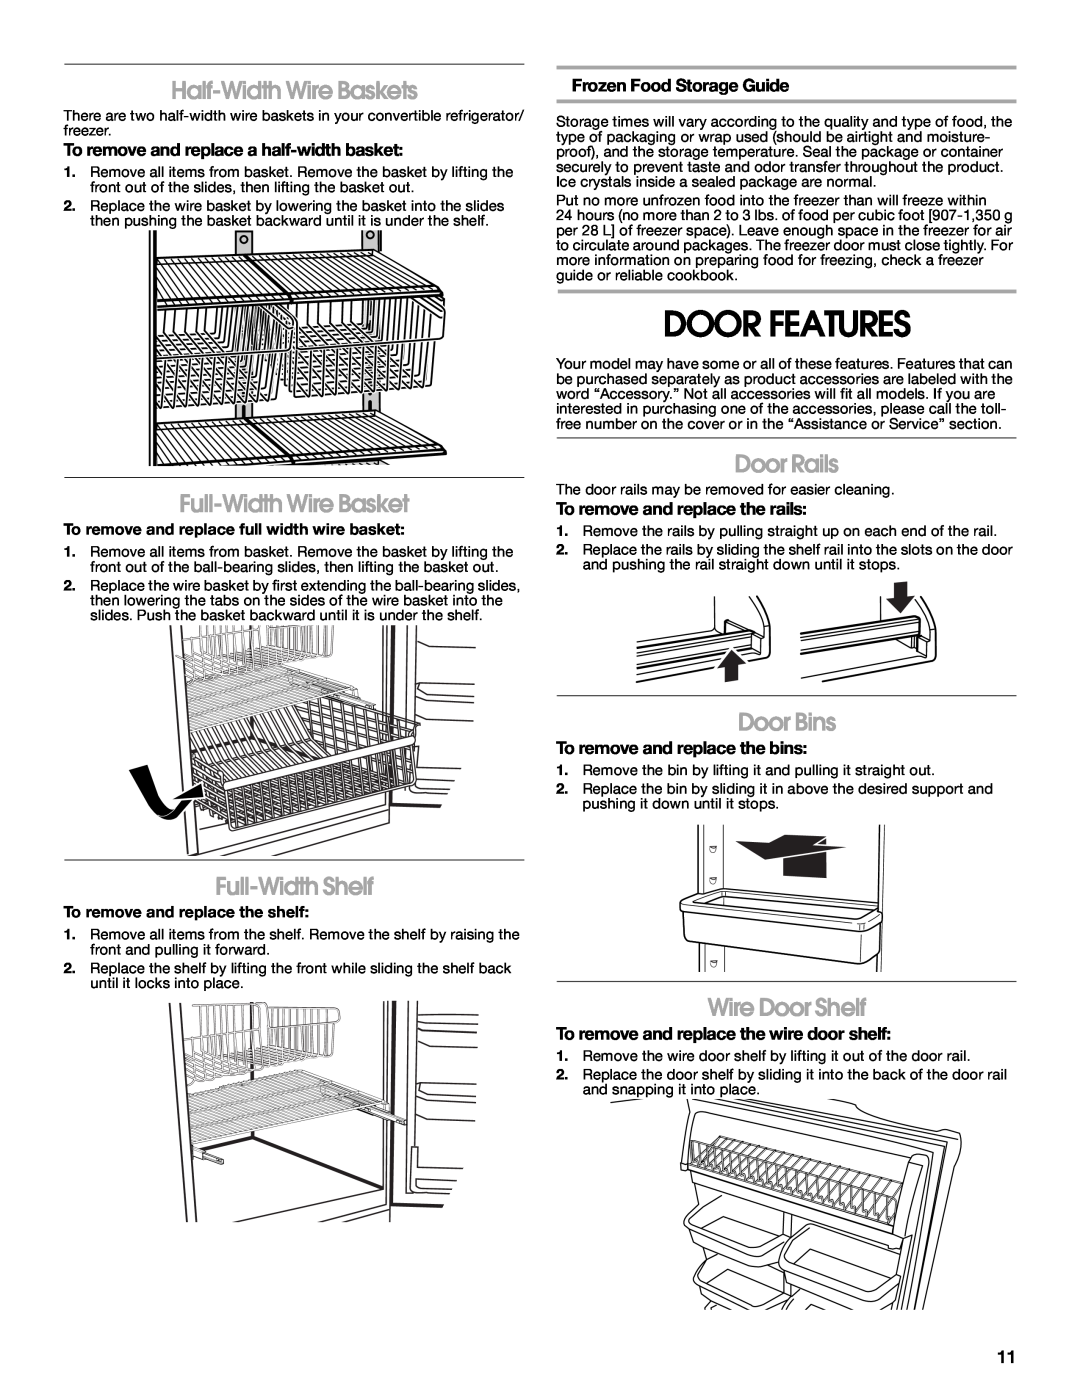 Whirlpool GAFZ21XXMK00 manual Door Features, Half-Width Wire Baskets, Full-Width Wire Basket, Door Rails, Full-Width Shelf 